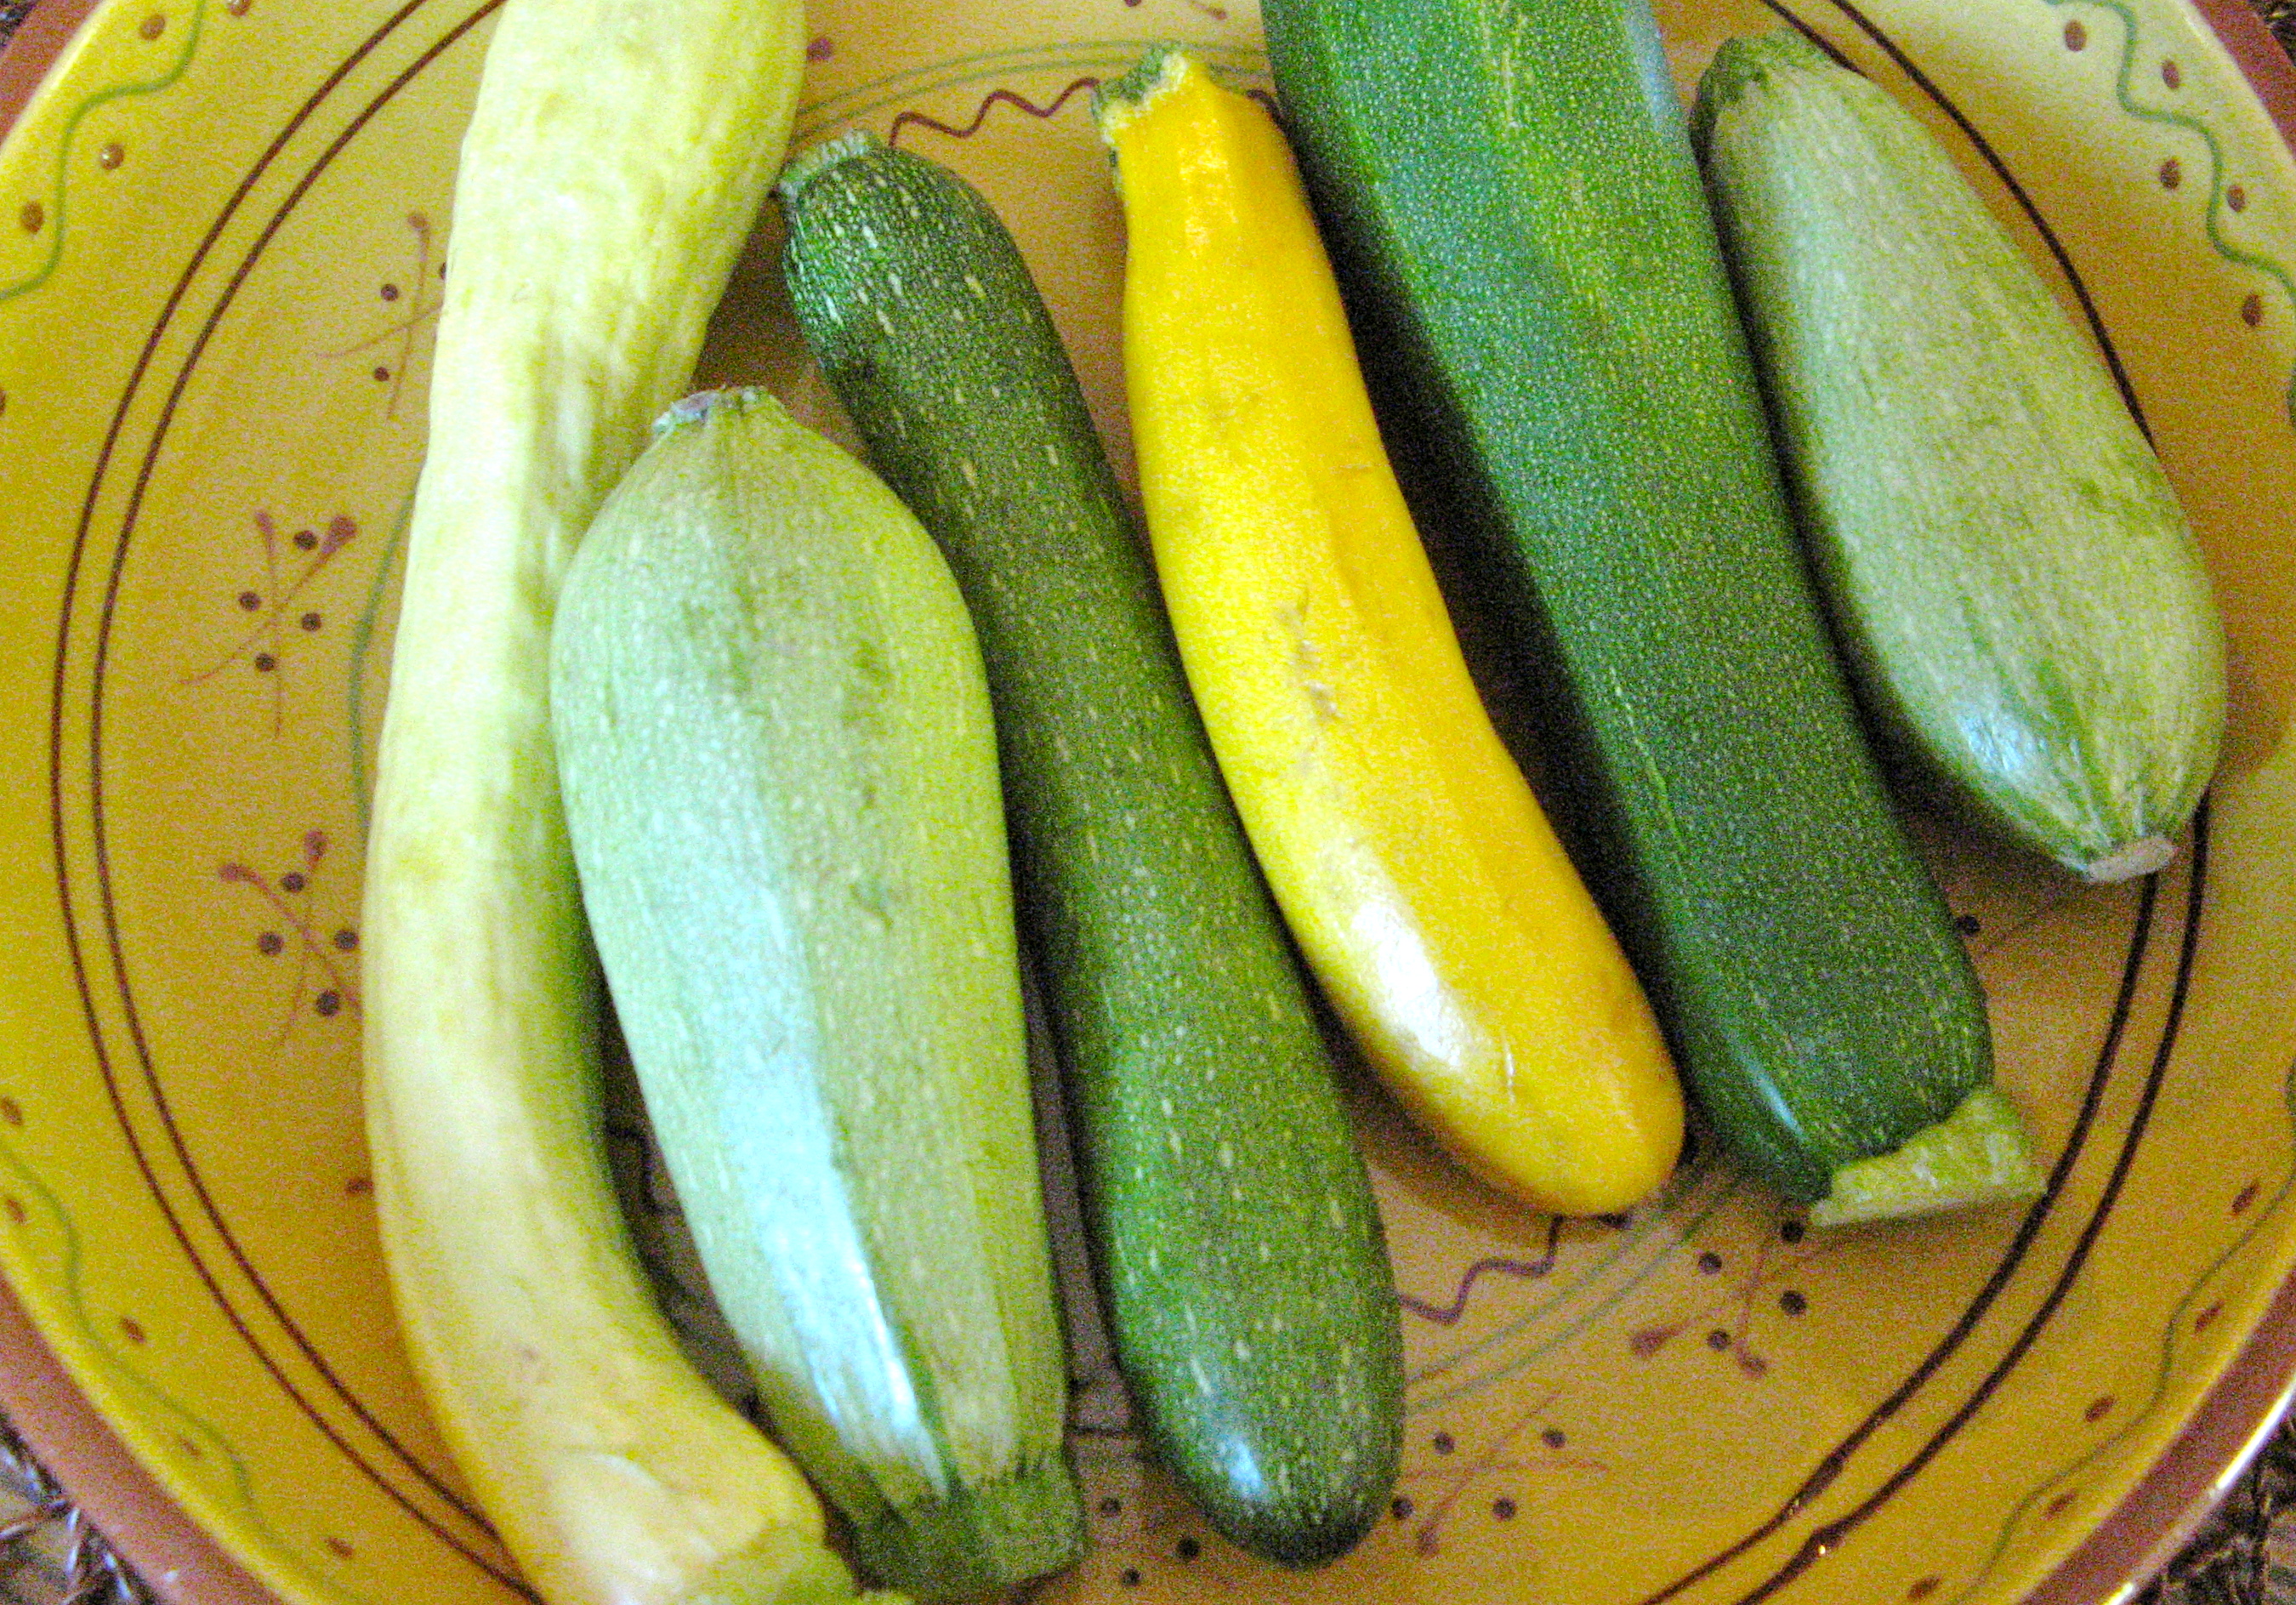 Summer squash varieties